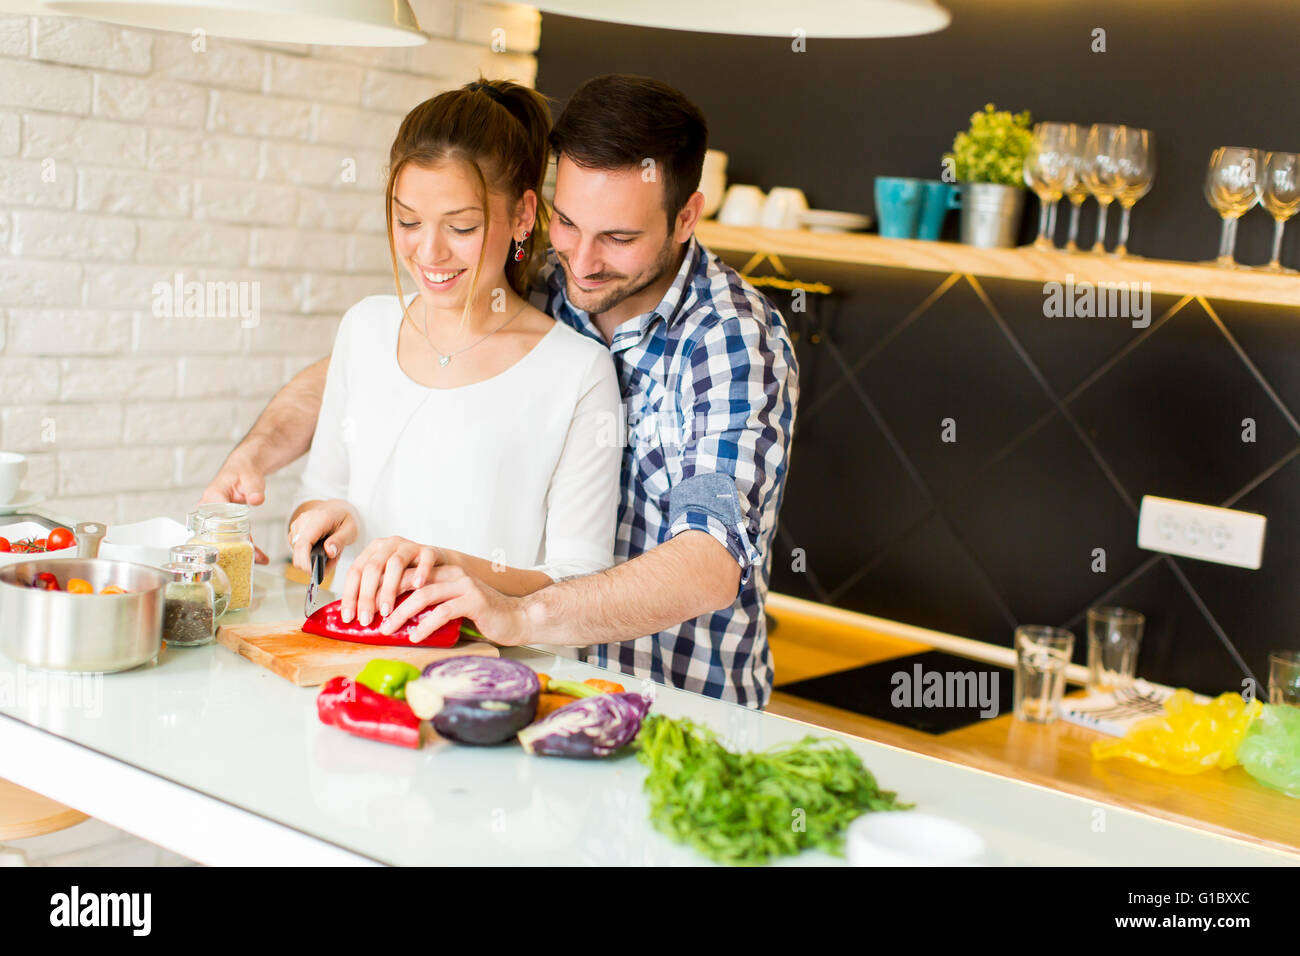 Amare giovane la preparazione di un alimento sano nella cucina moderna Foto Stock